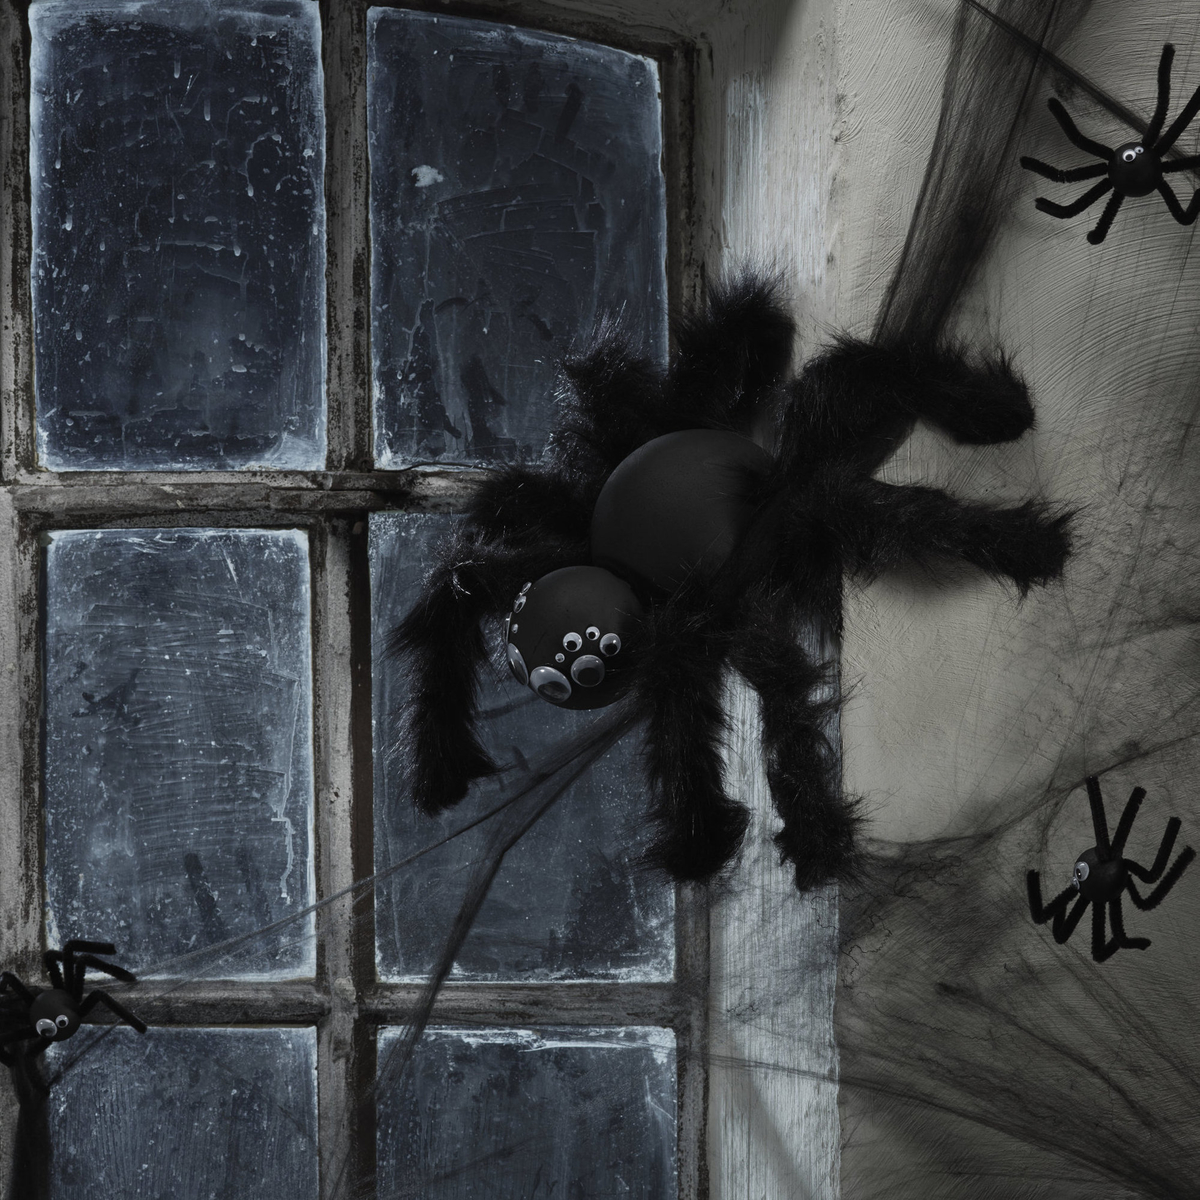 Spindel, spindel på väggen där ...